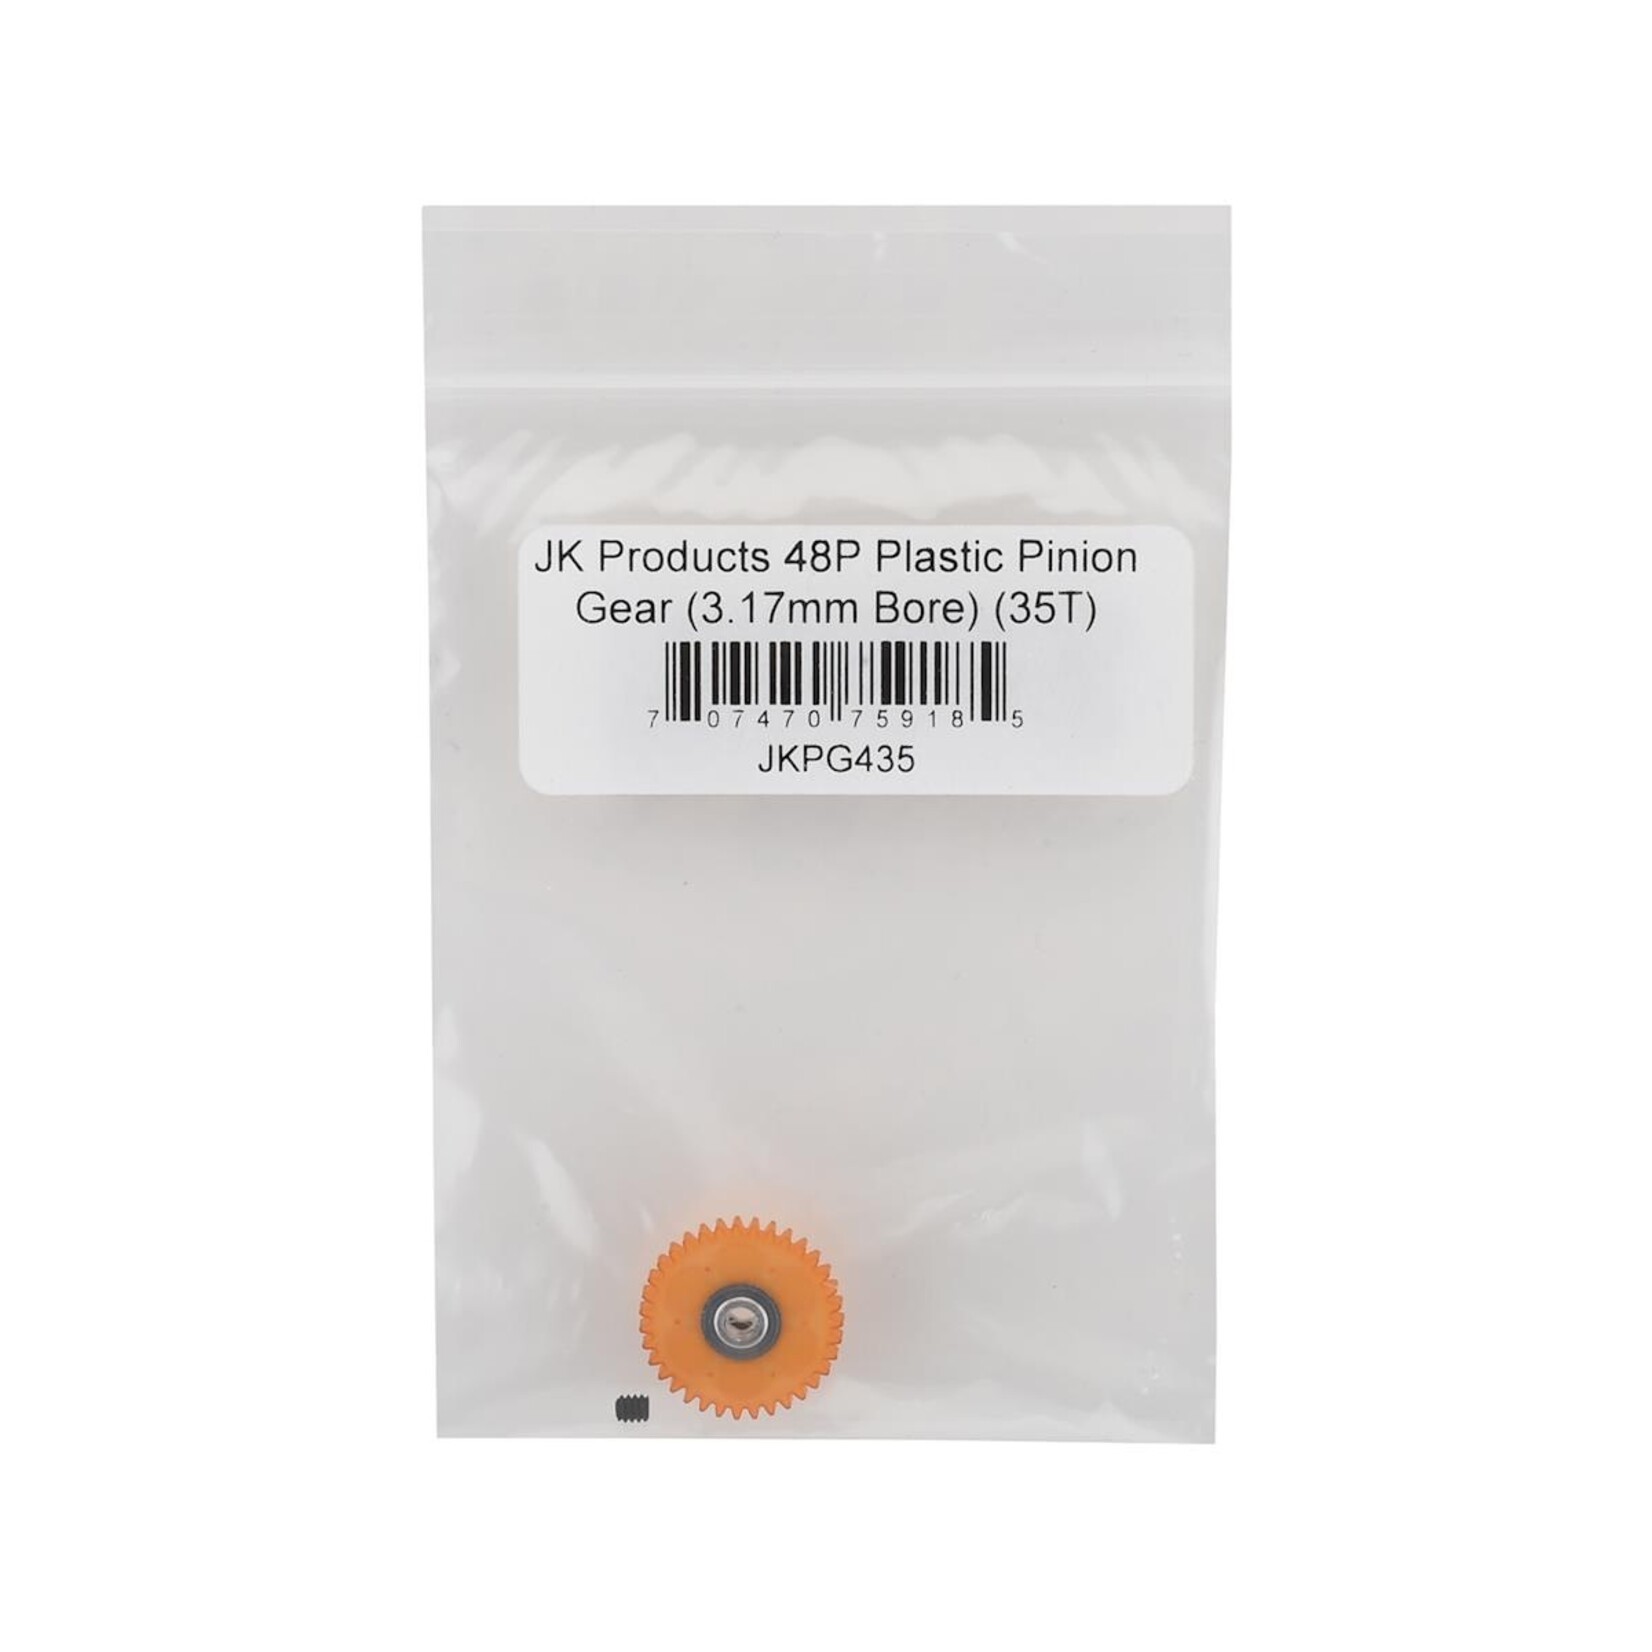 JK Products JK Products 48P Plastic Pinion Gear (3.17mm Bore) (35T) #JKPG435